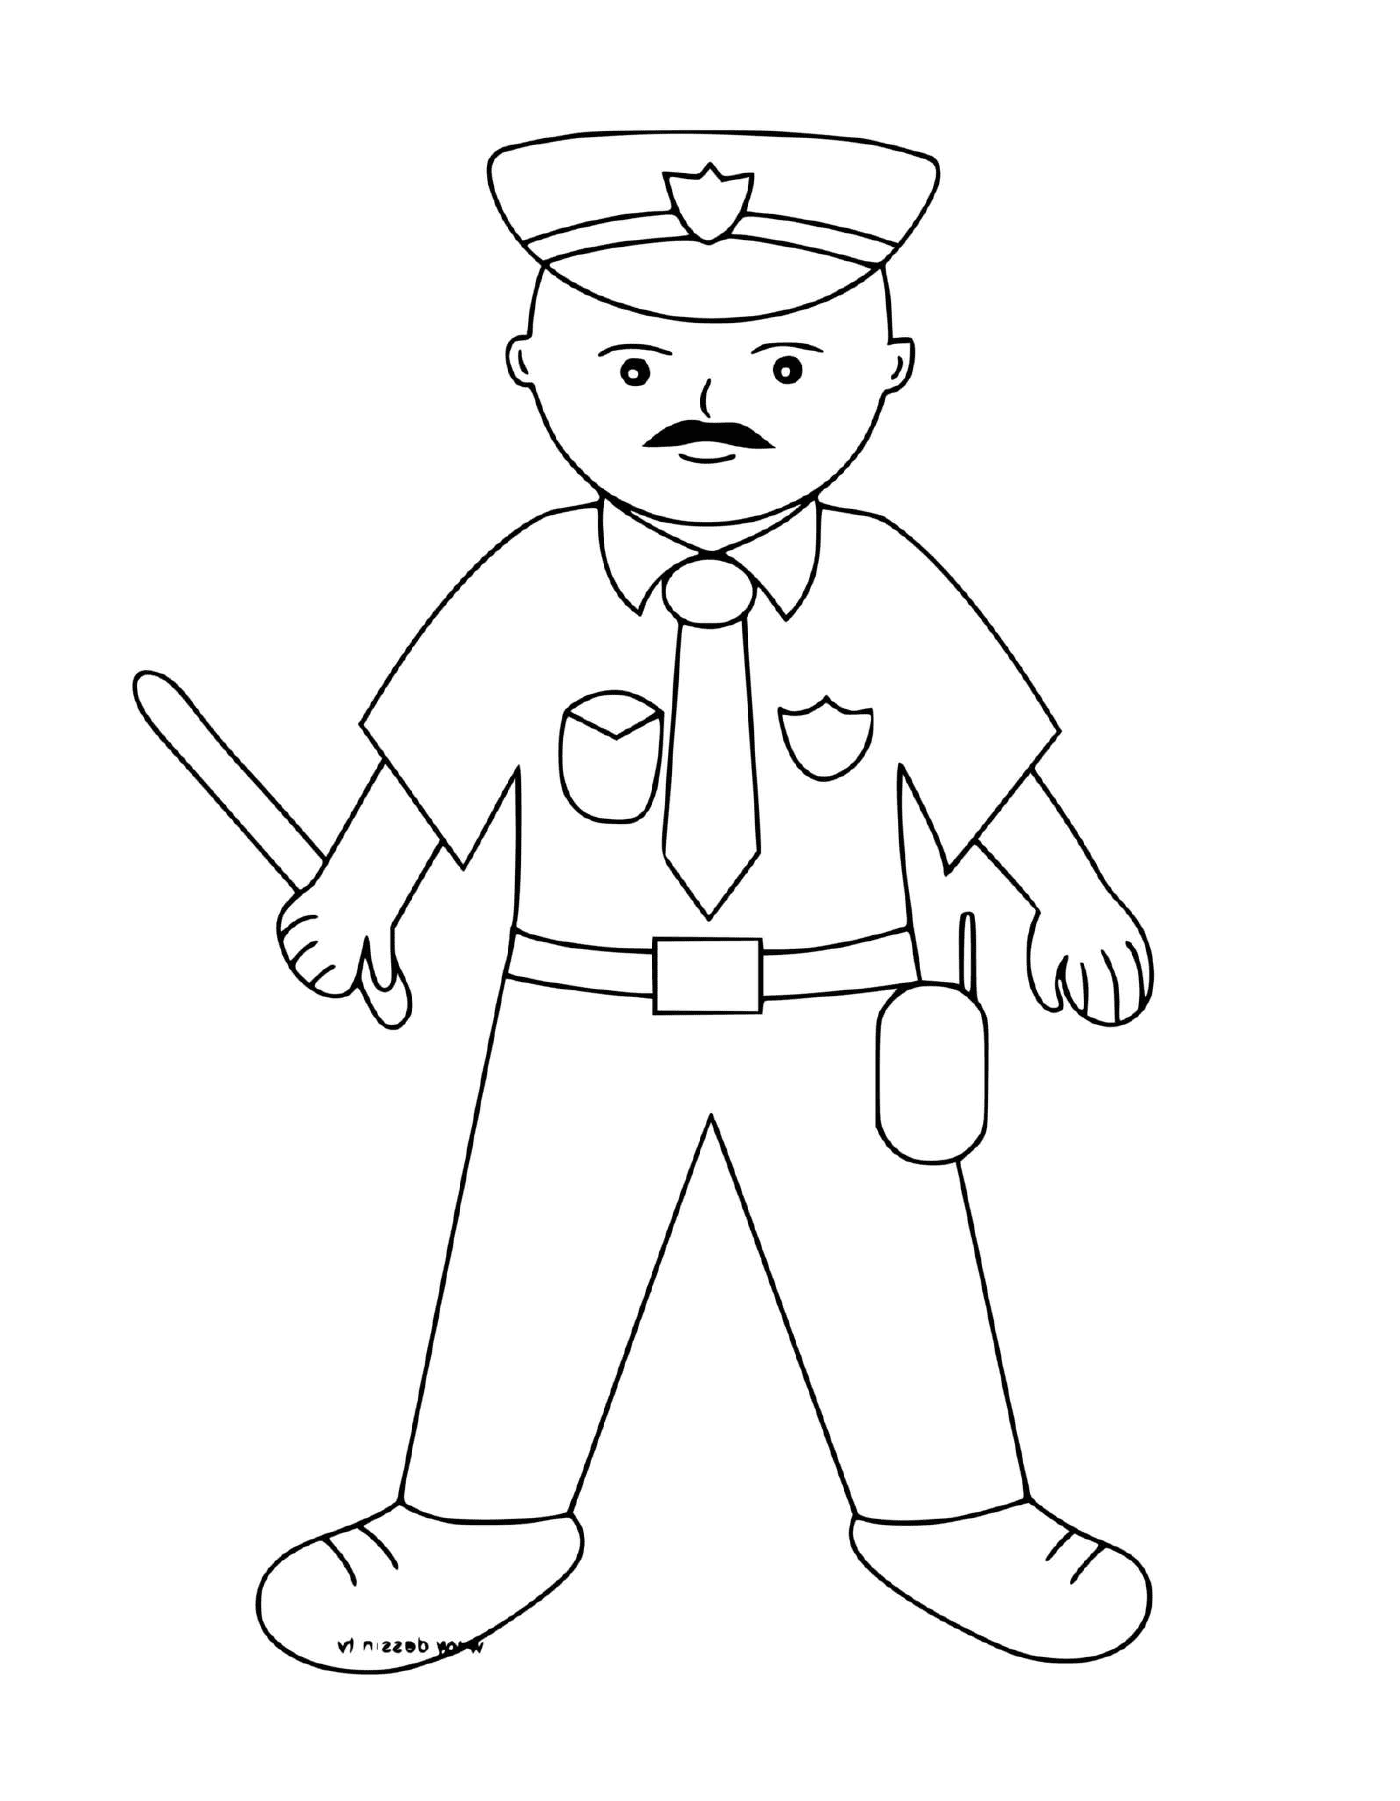  Poliziotto con manganello in mano 